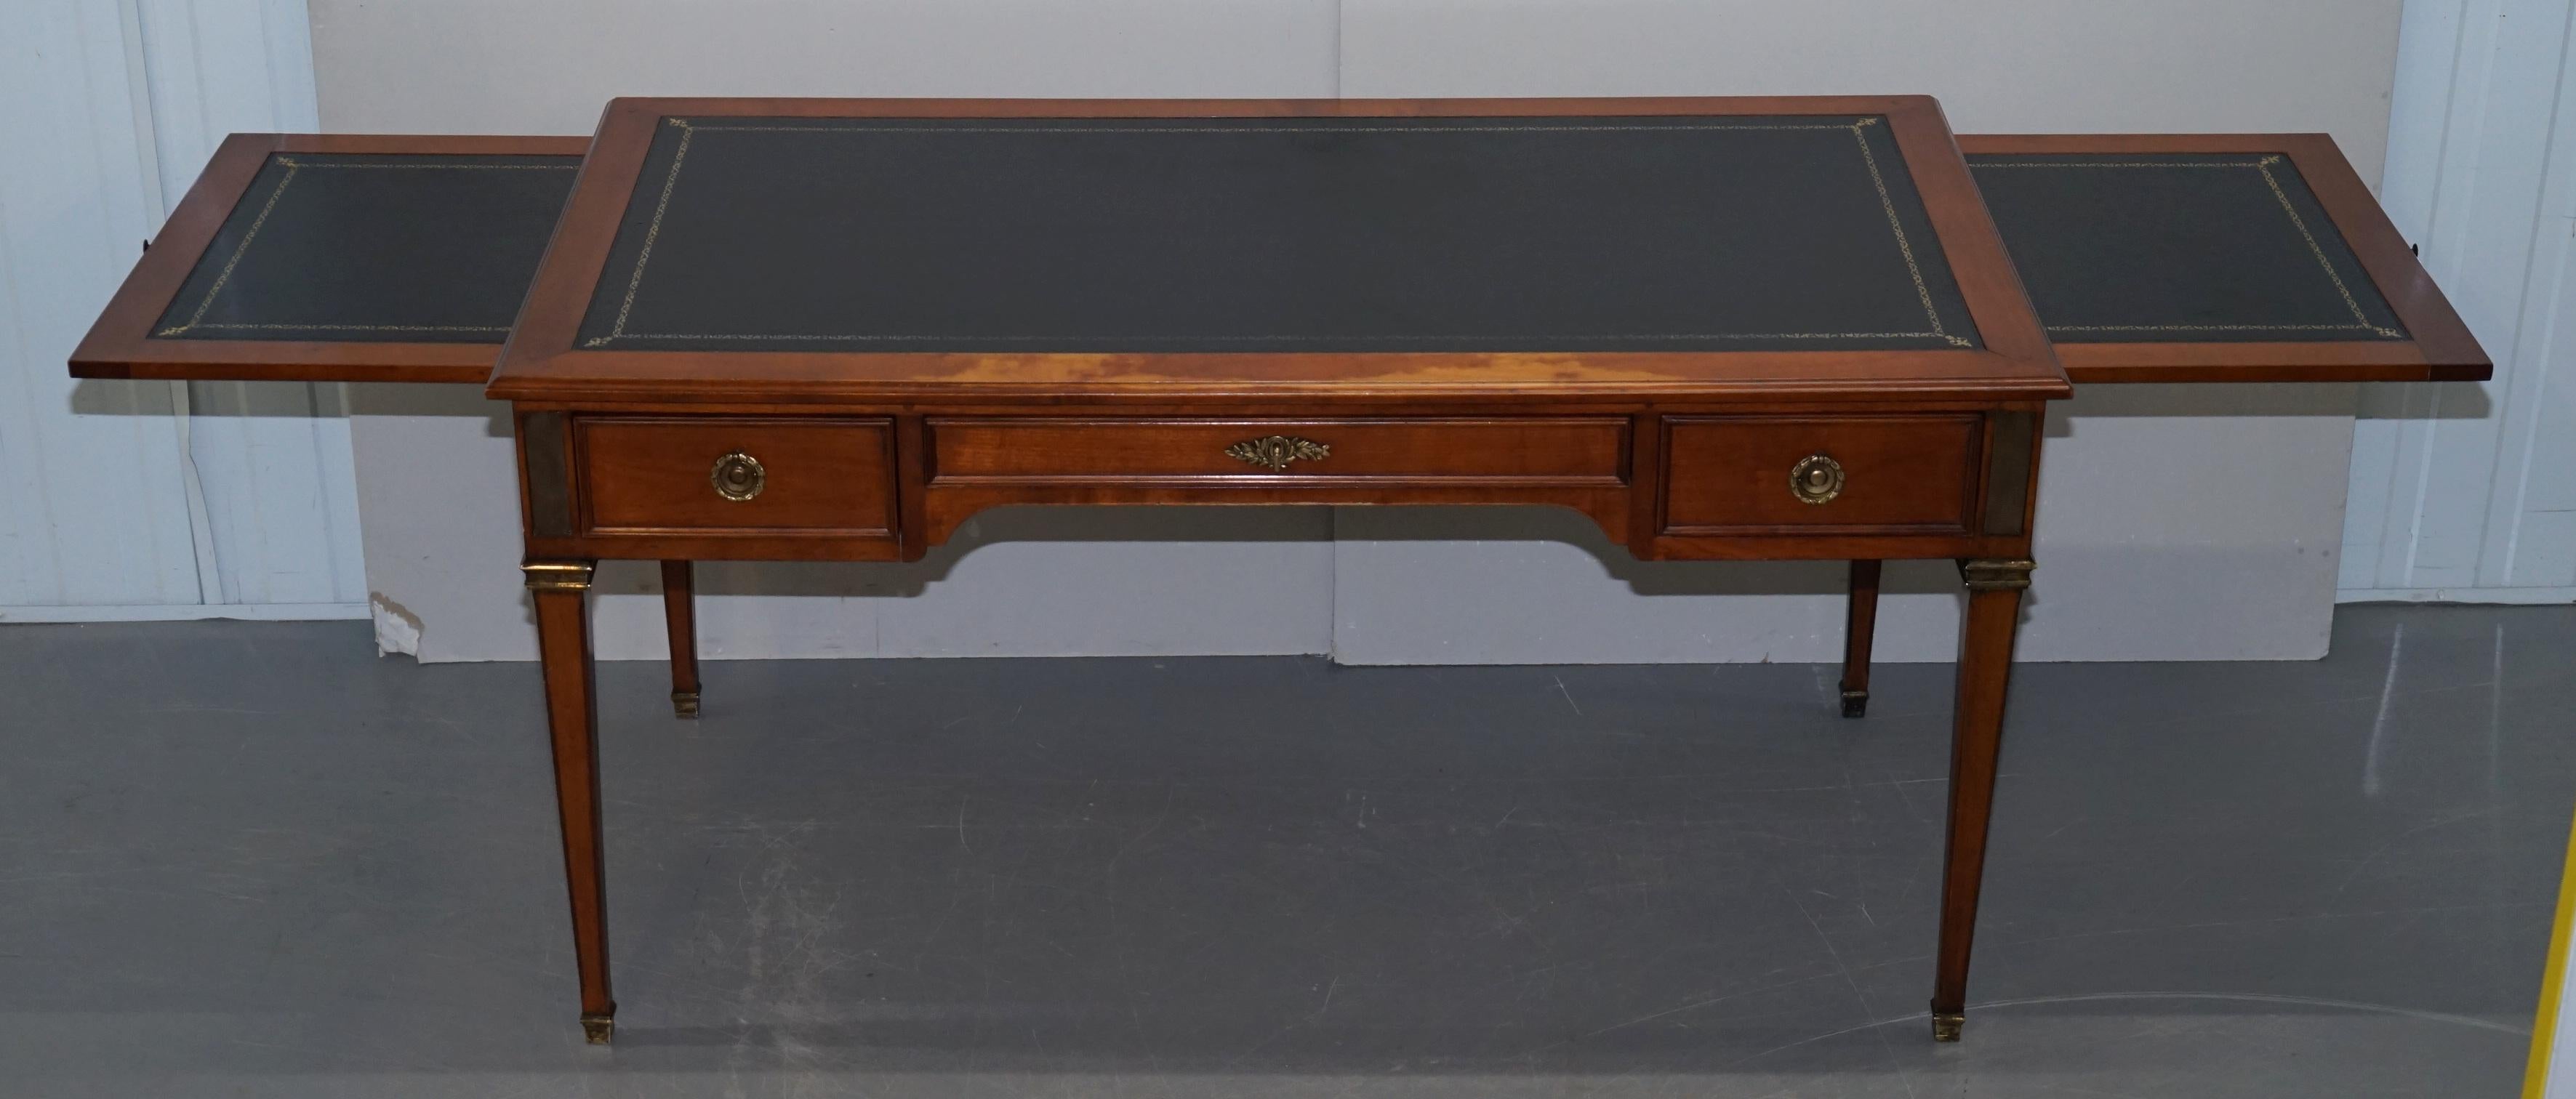 Vintage Fruitwood Leather Topped Extending Bureau De Plat Desk Writing Table 9